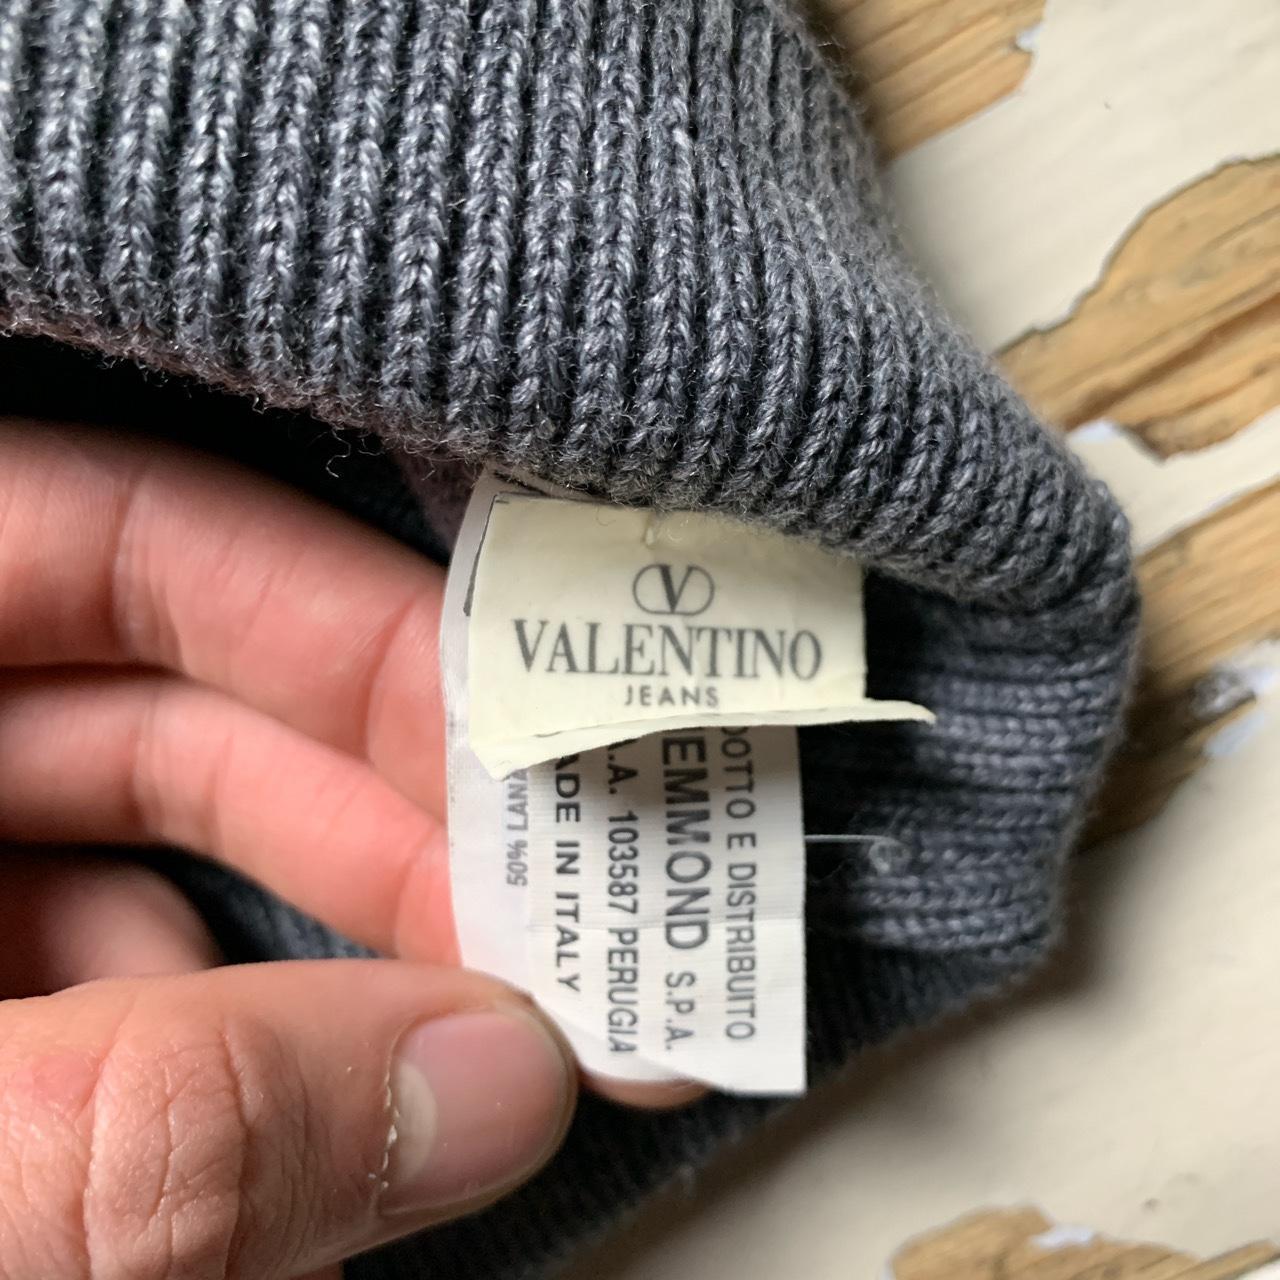 Valentino Jeans Vintage Grey Knitted Turtleneck Jumper